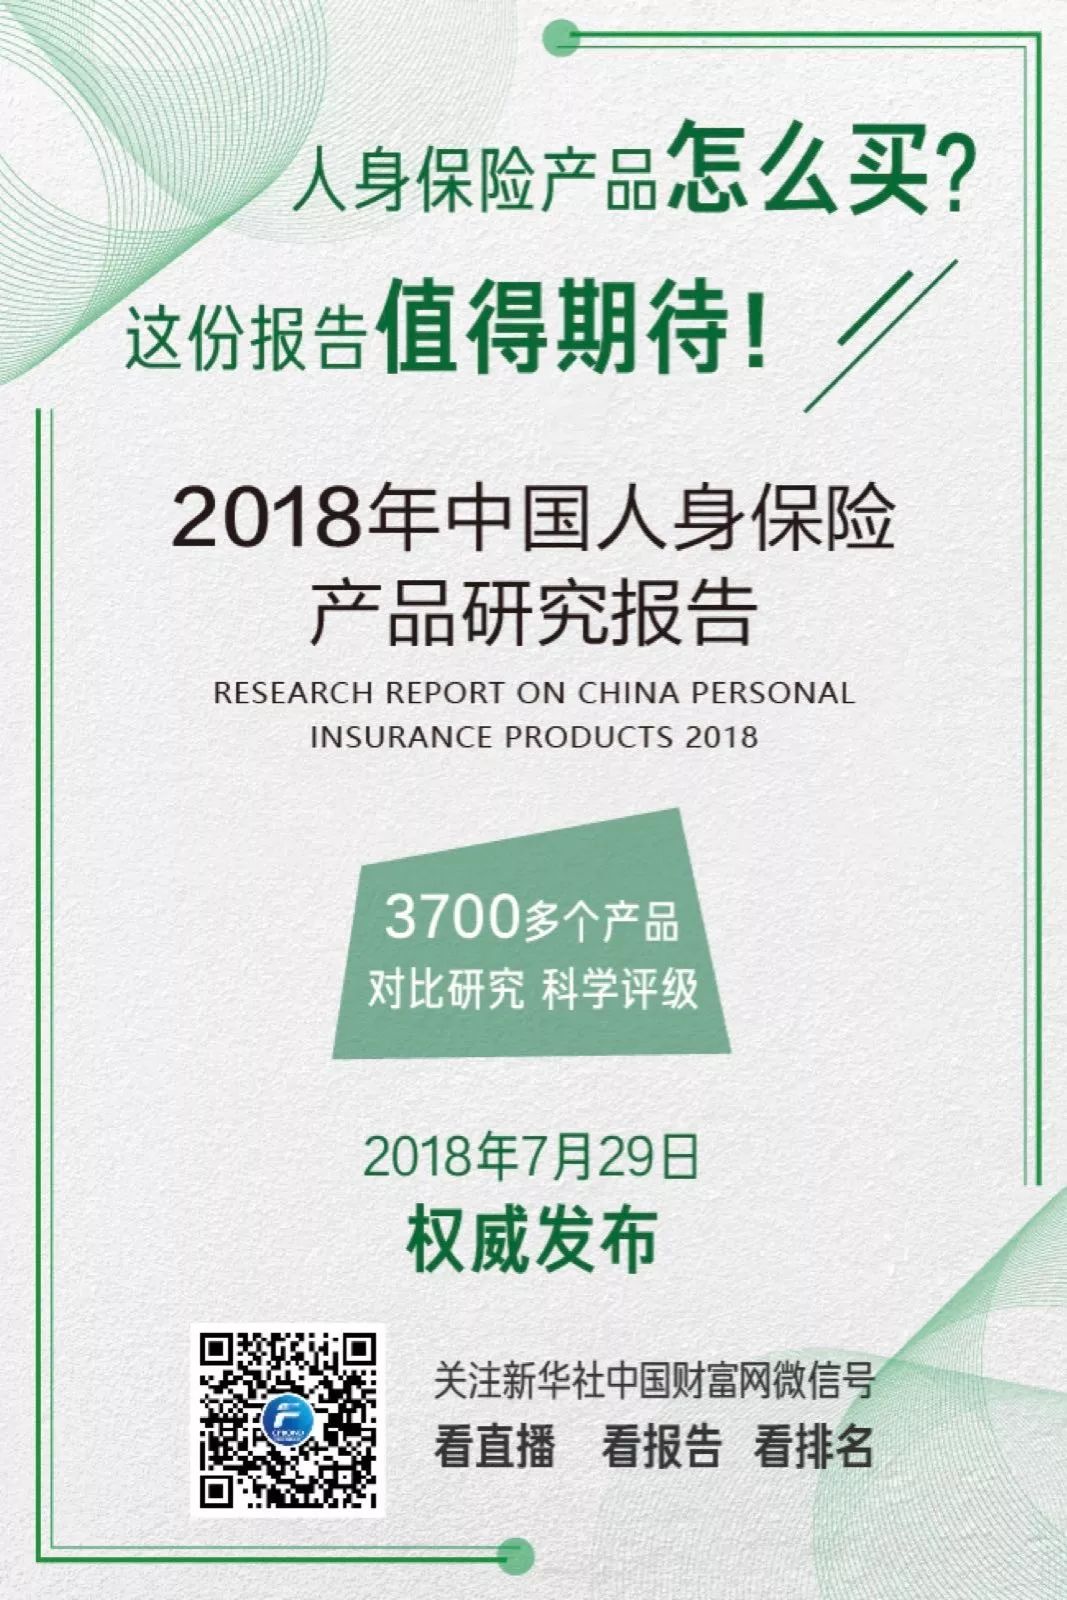 直播:2018年中国人身保险产品研究报告发布